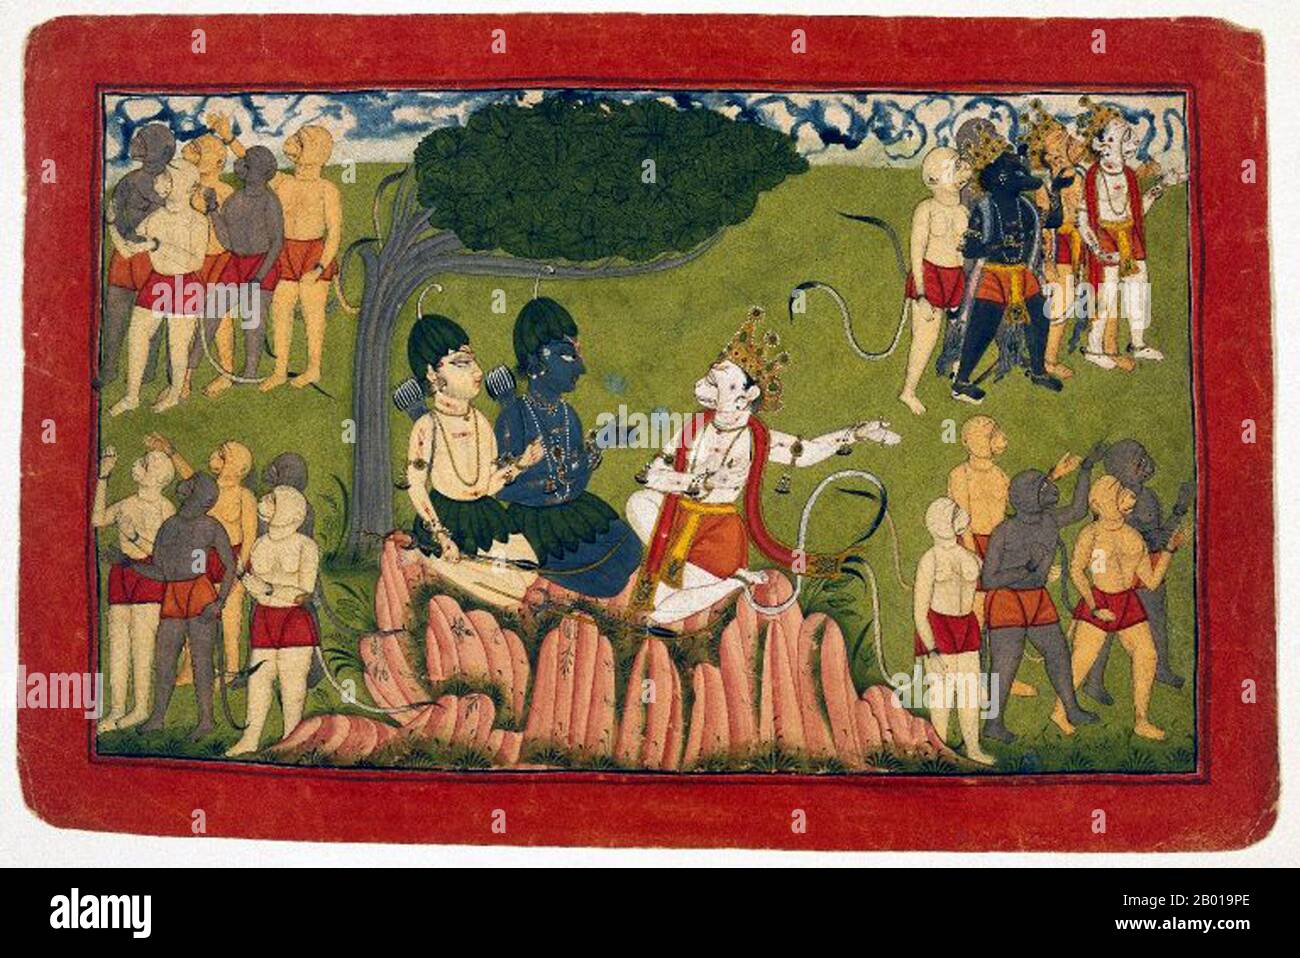 India: Rama e Lakshmana conferiscono al re Sugriva, il re delle scimmie di Kishkindha, la ricerca di Sita. Gouache e oro su carta da una dispersa Ramayana Series, c. 1690-1720. Kishkindha era il regno delle scimmie della Vanara (scimmia) re Sugriva, il fratello minore di Bali, nell'epica indiana il Ramayana. Questo era il regno dove governò con l'aiuto del suo ministro, Hanuman. Questo regno è identificato per essere le regioni intorno al fiume di Tungabhadra (allora conosciuto come Pampa Saras) vicino Hampi in Karnataka. Foto Stock